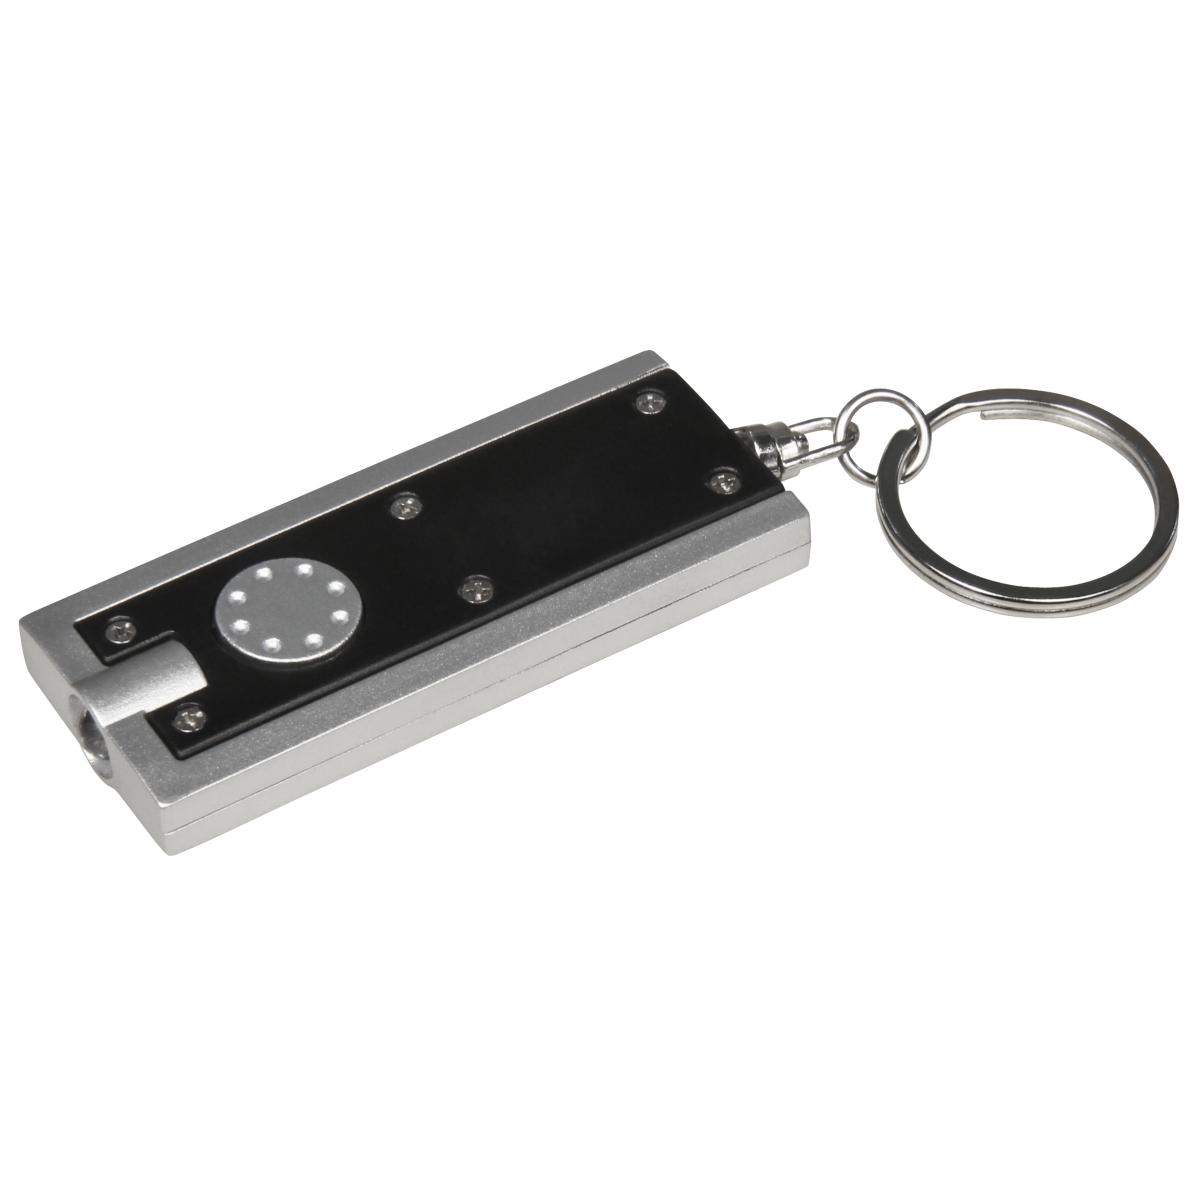 Torche miniature à led porte clefs - piles incluses